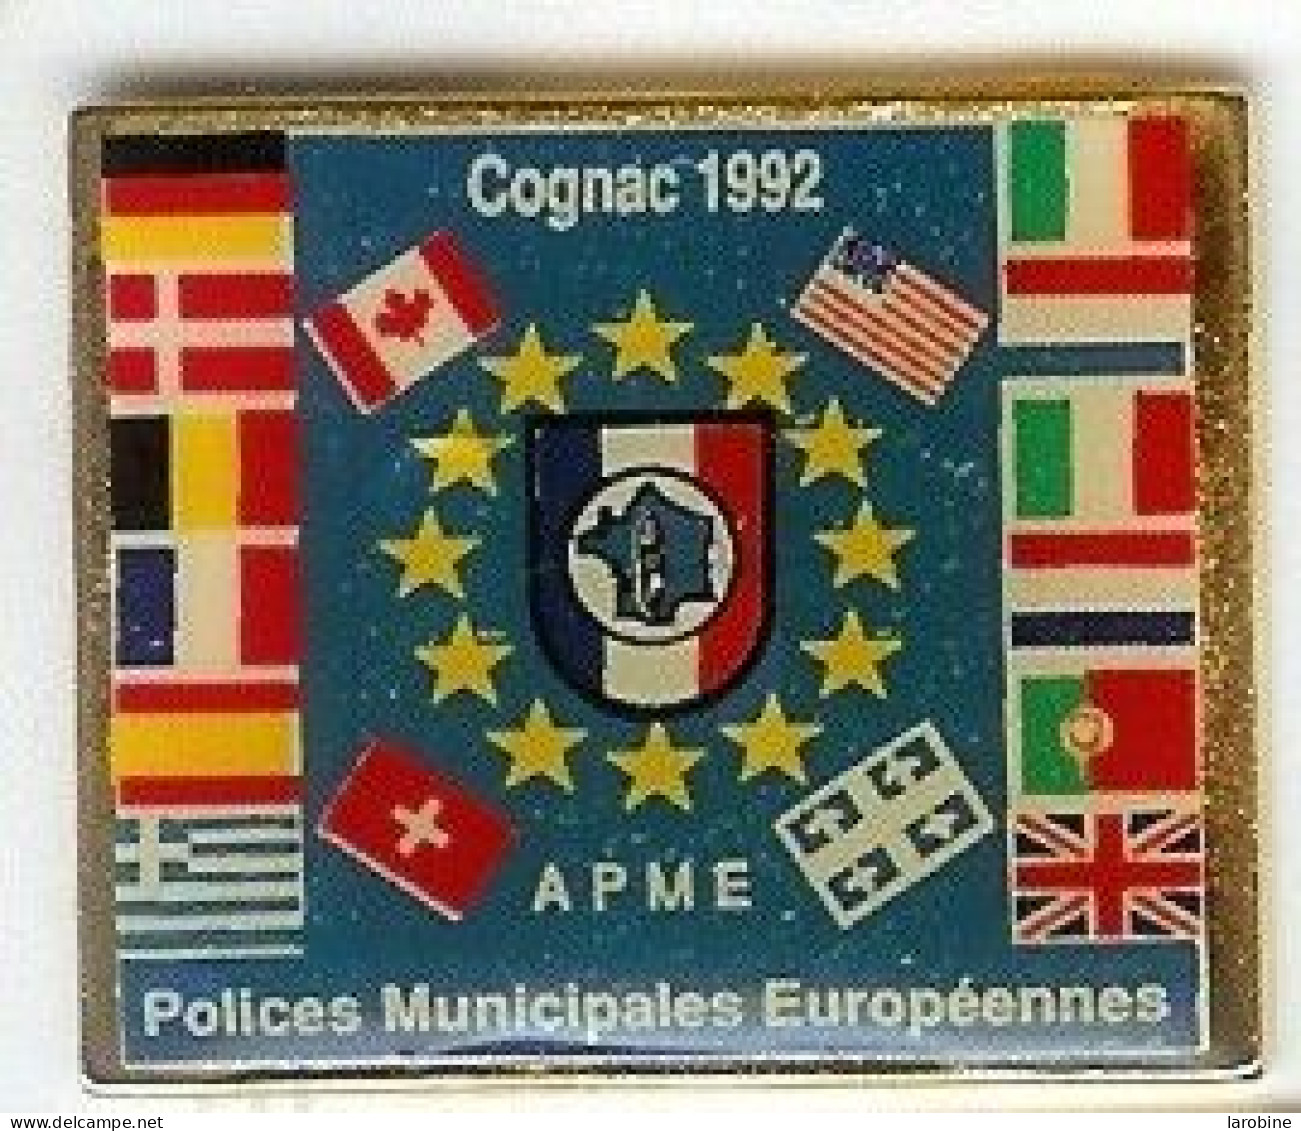 @@ COGNAC Polices Municipales Européennes APME 1992 (3x2.5) @@pol92b - Polizei